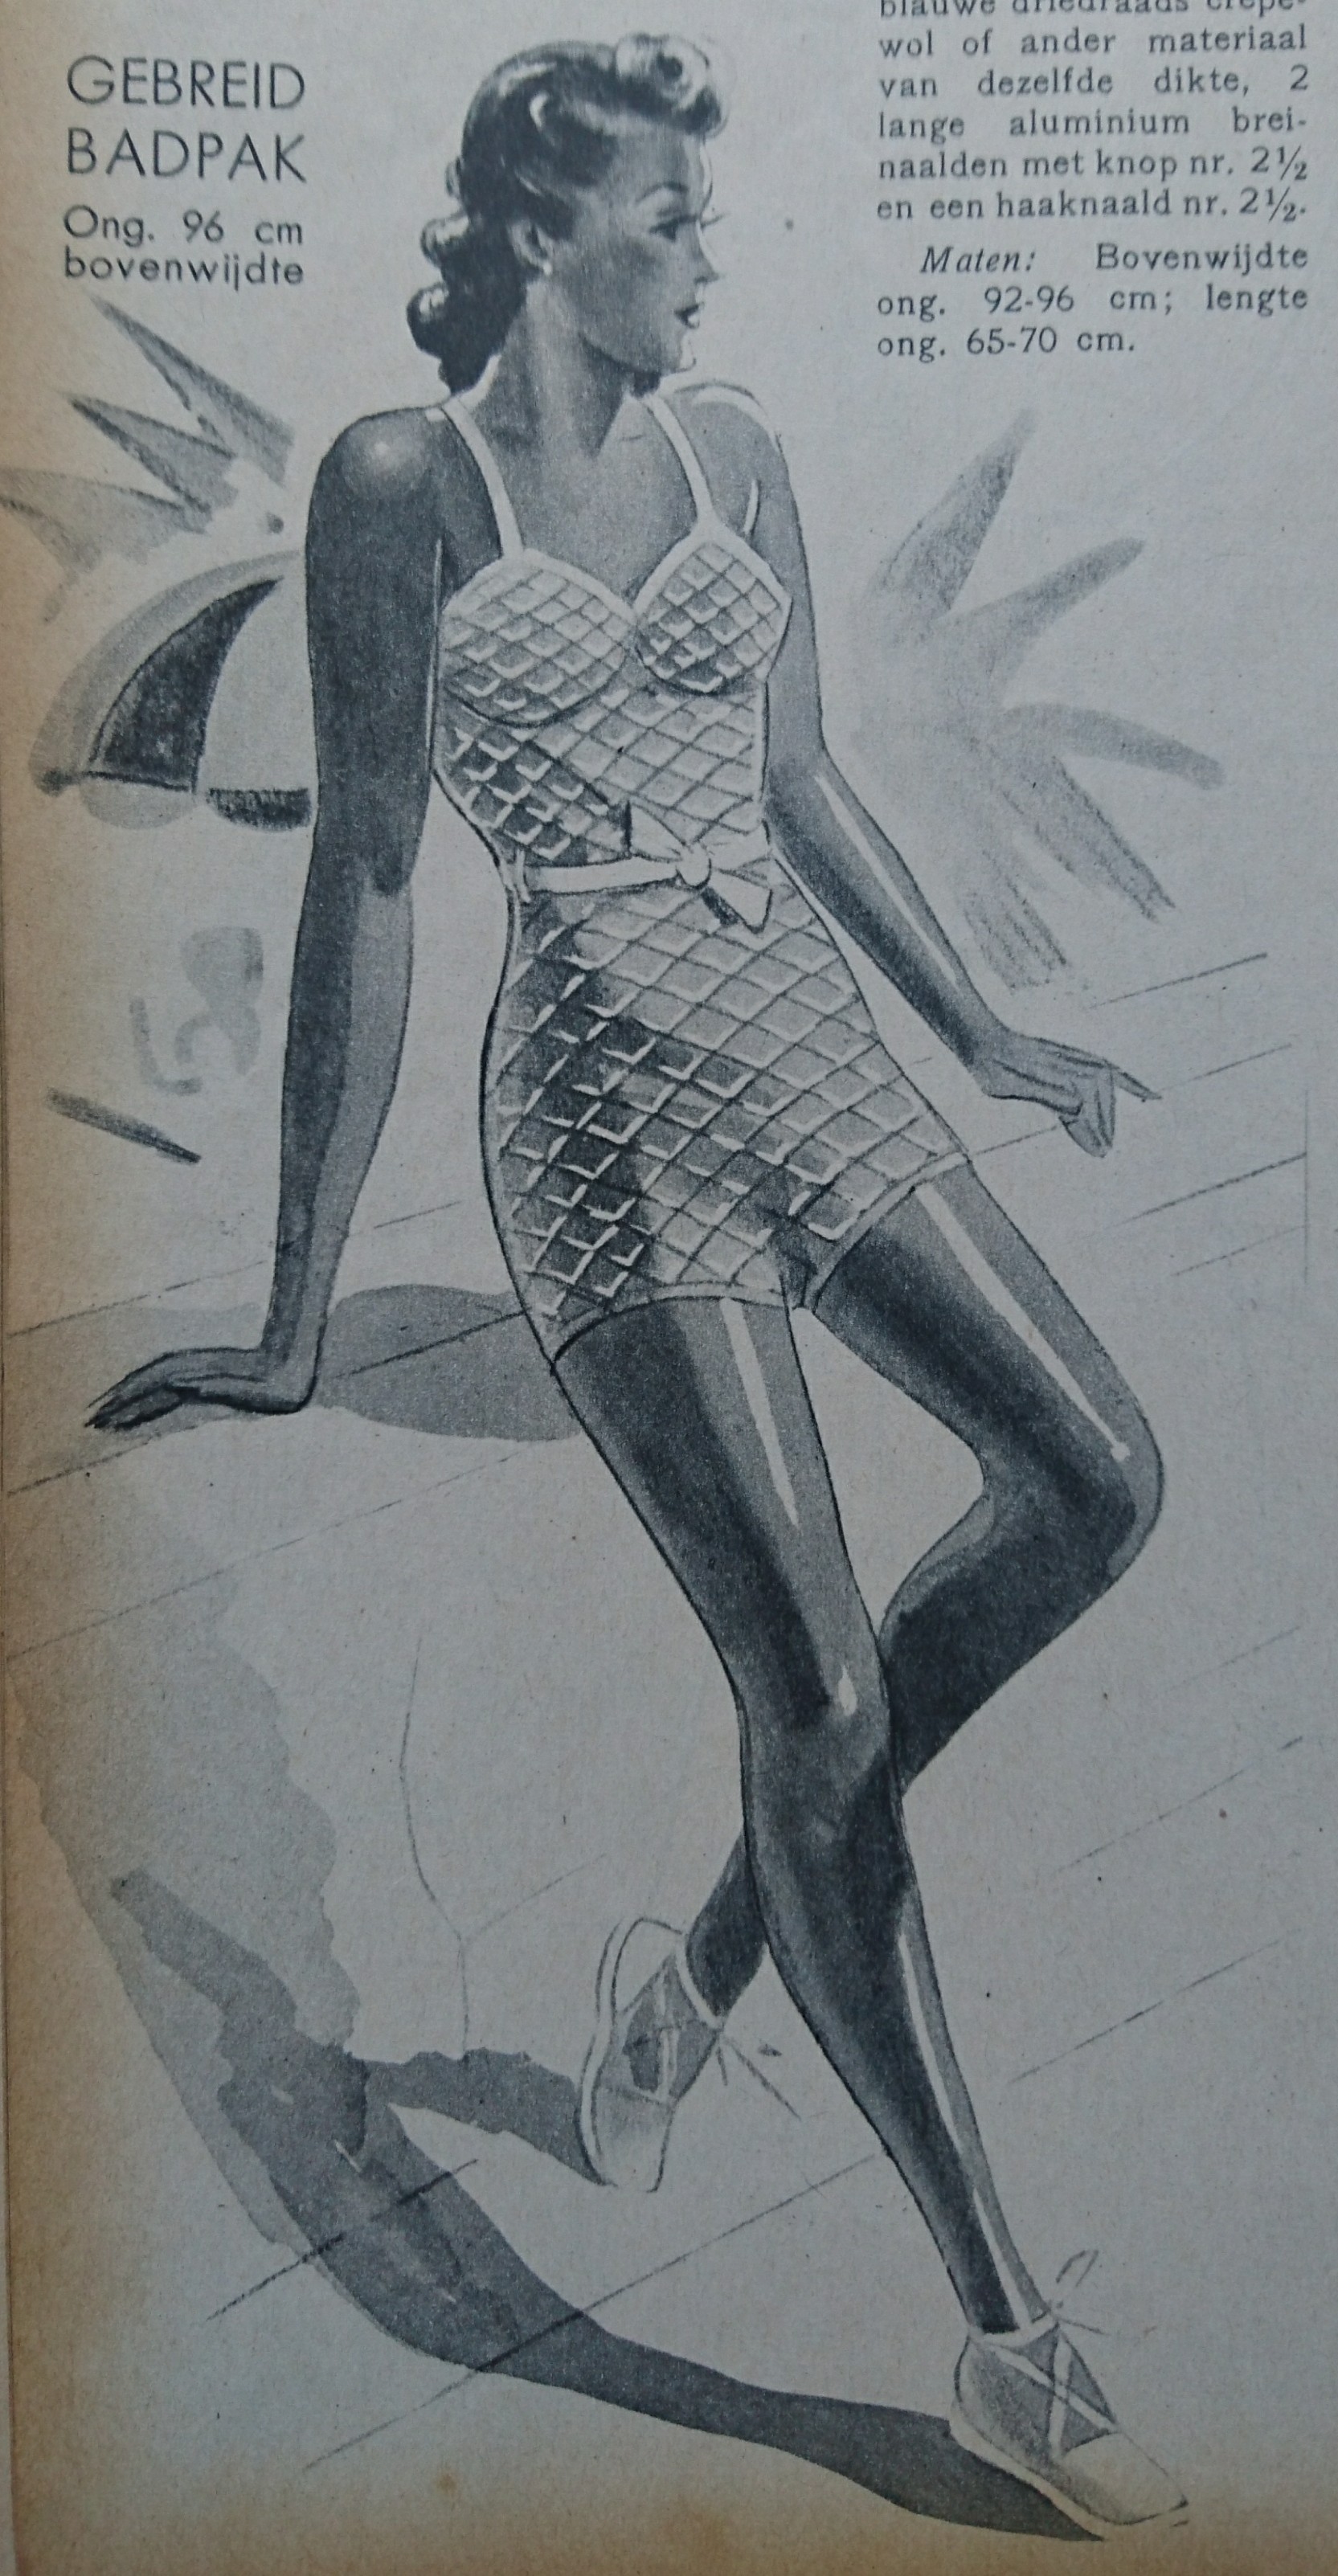 Illustratie bij een patroon voor een gebreid badpak uit Libelle no. 11, 1941